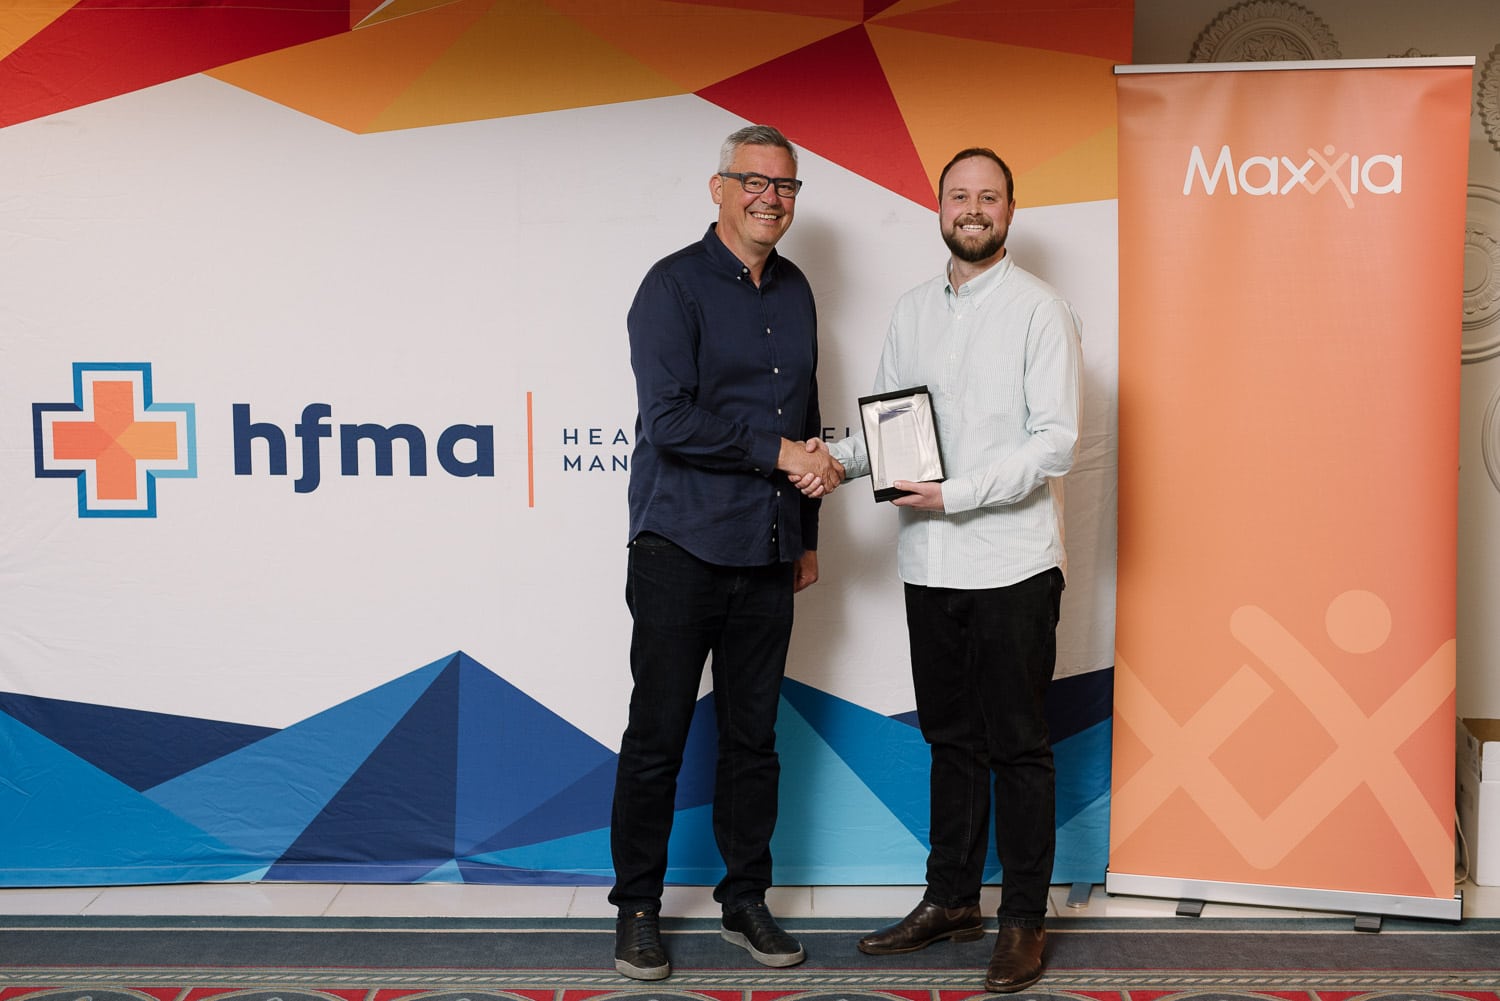 Award presentation at the HFMA conference